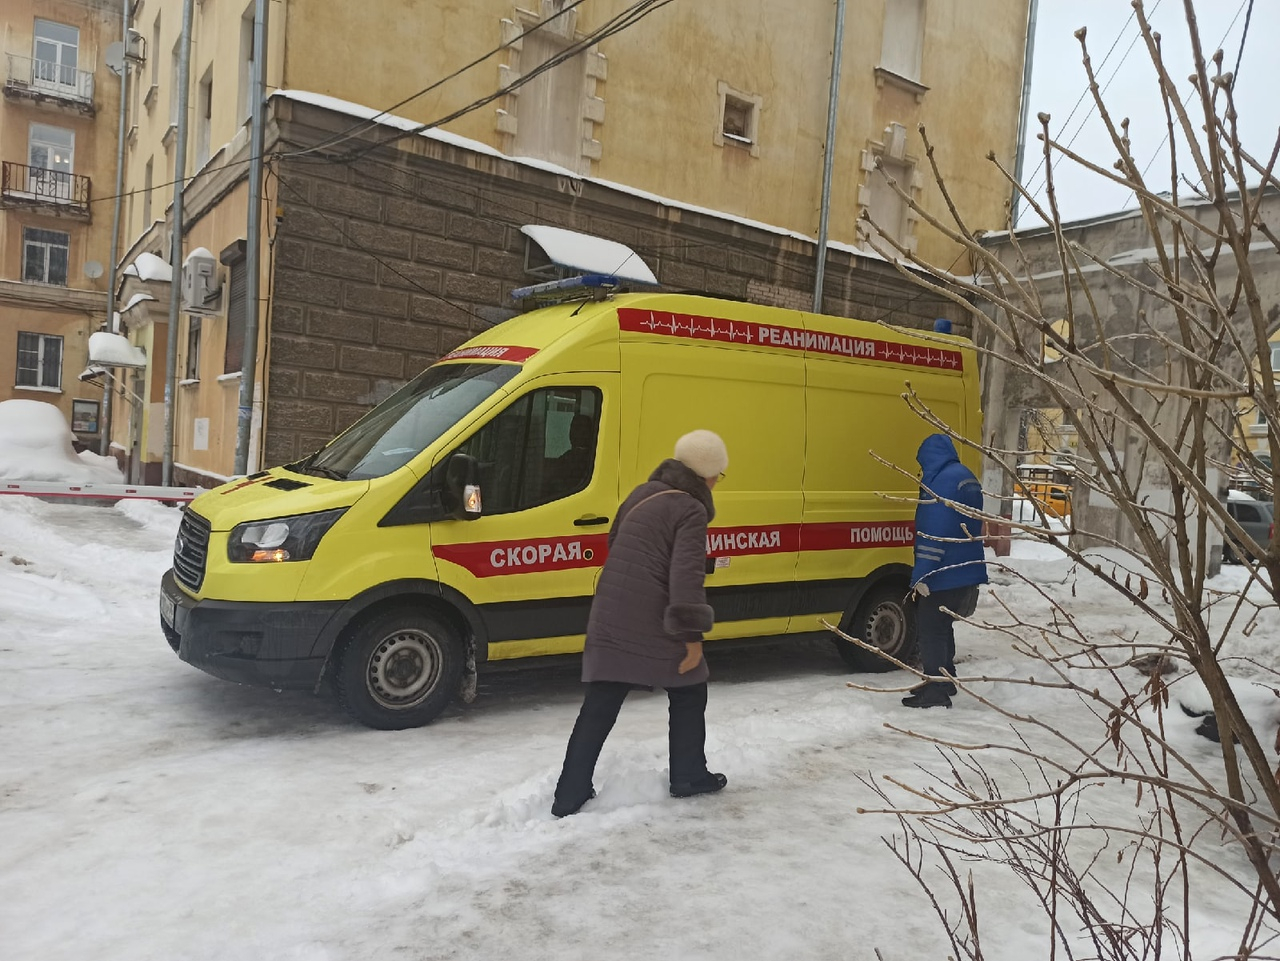 Издевались и утопили в Волге: изуродованный труп нашли в Ярославле